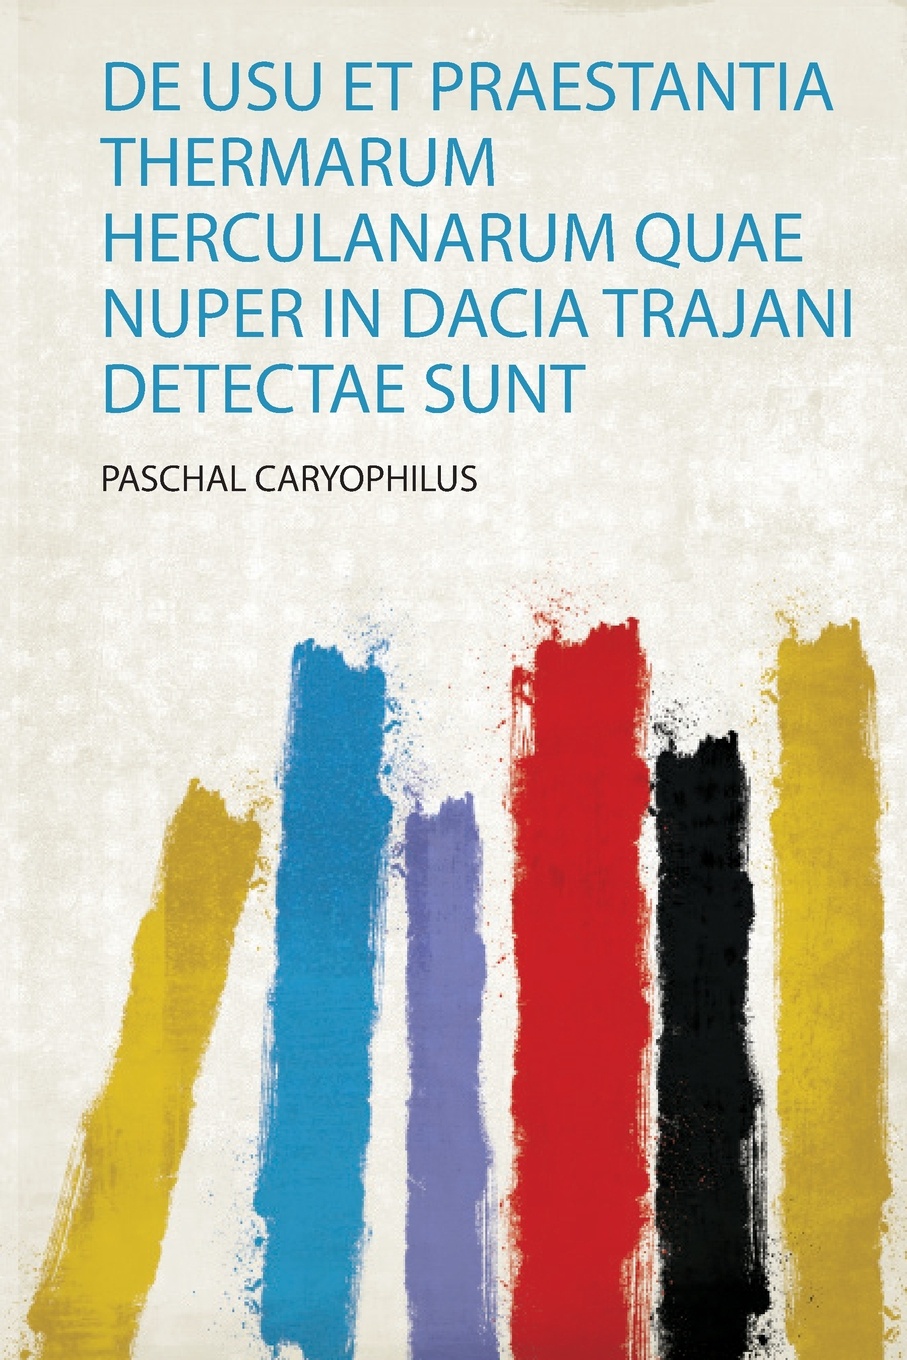 De Usu Et Praestantia Thermarum Herculanarum Quae Nuper in Dacia Trajani Detectae Sunt